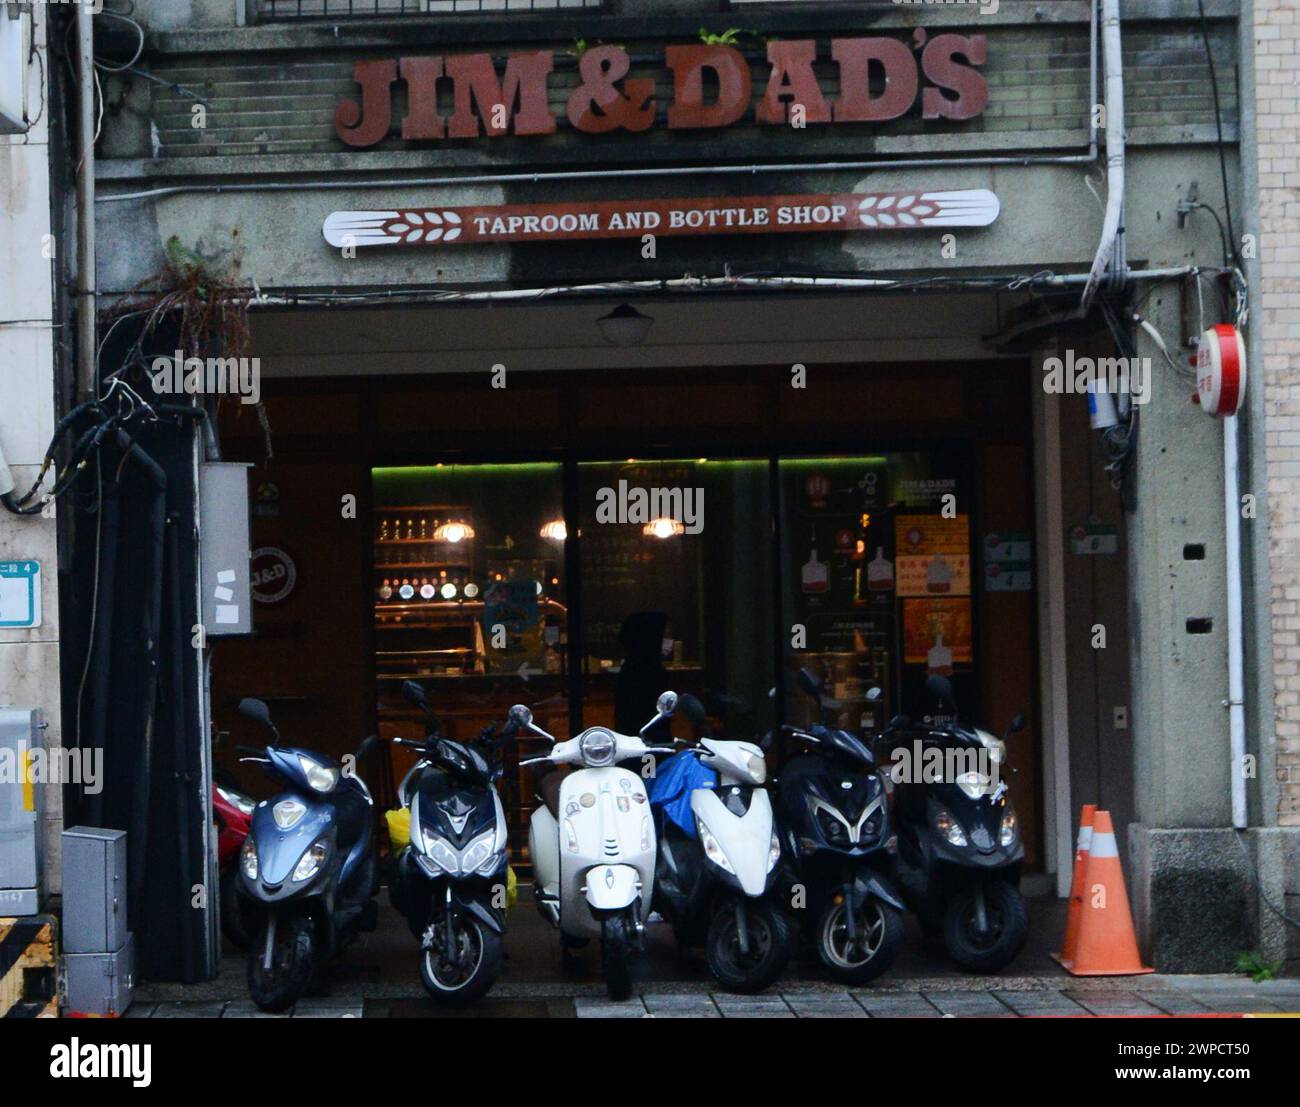 Jim & Dad's taproom in Taipei, Taiwan. Stock Photo